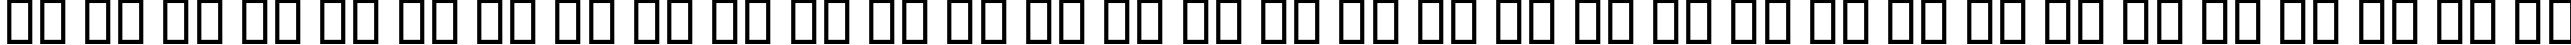 Пример написания русского алфавита шрифтом Edwardian Script ITC